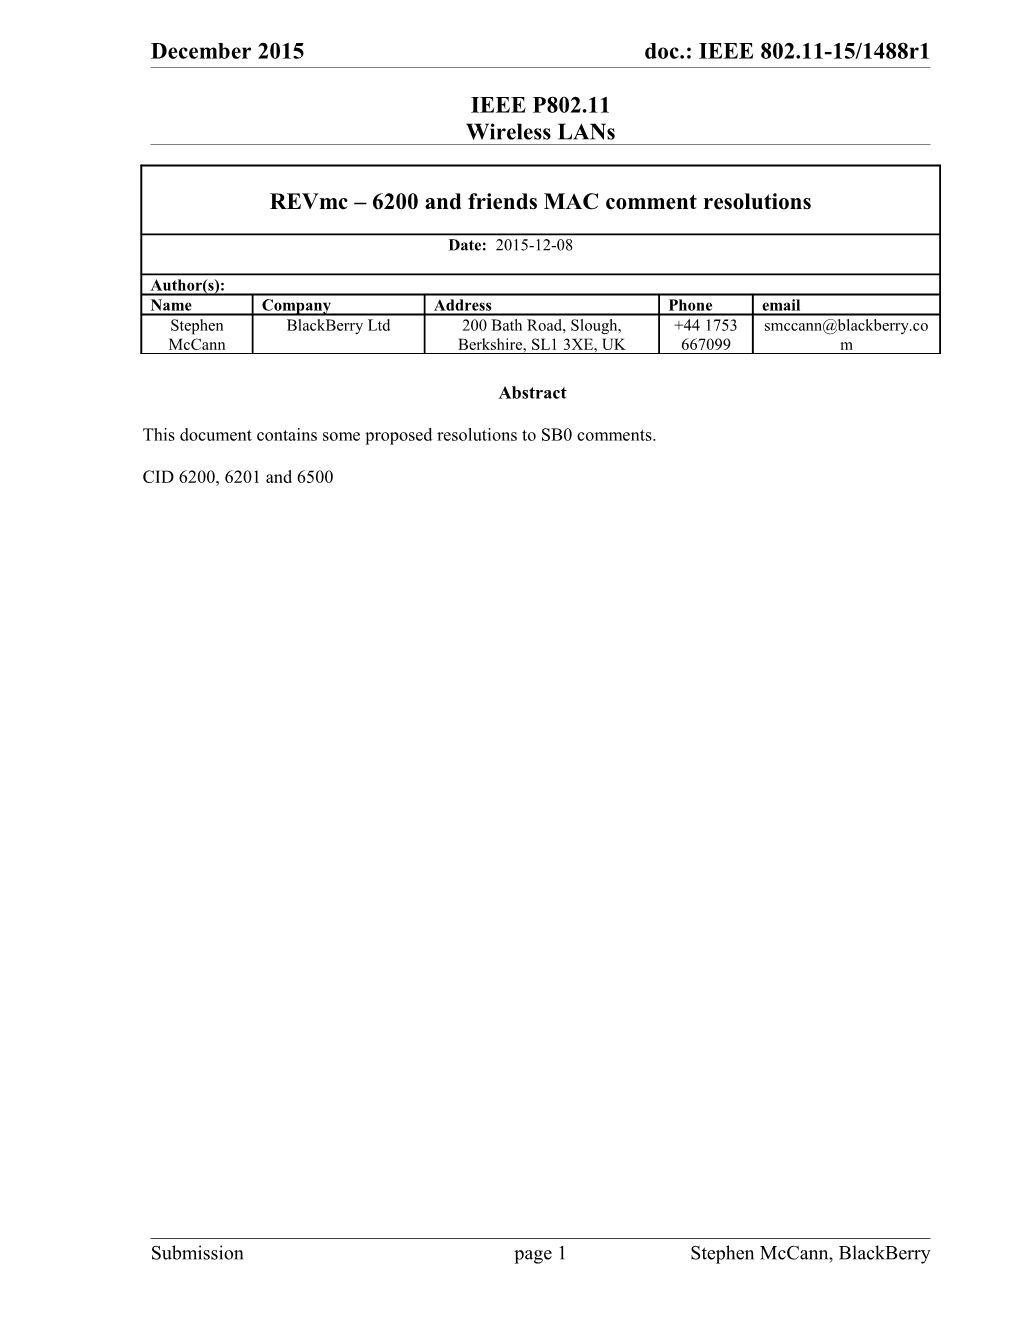 IEEE P802.11 Wireless Lans s33